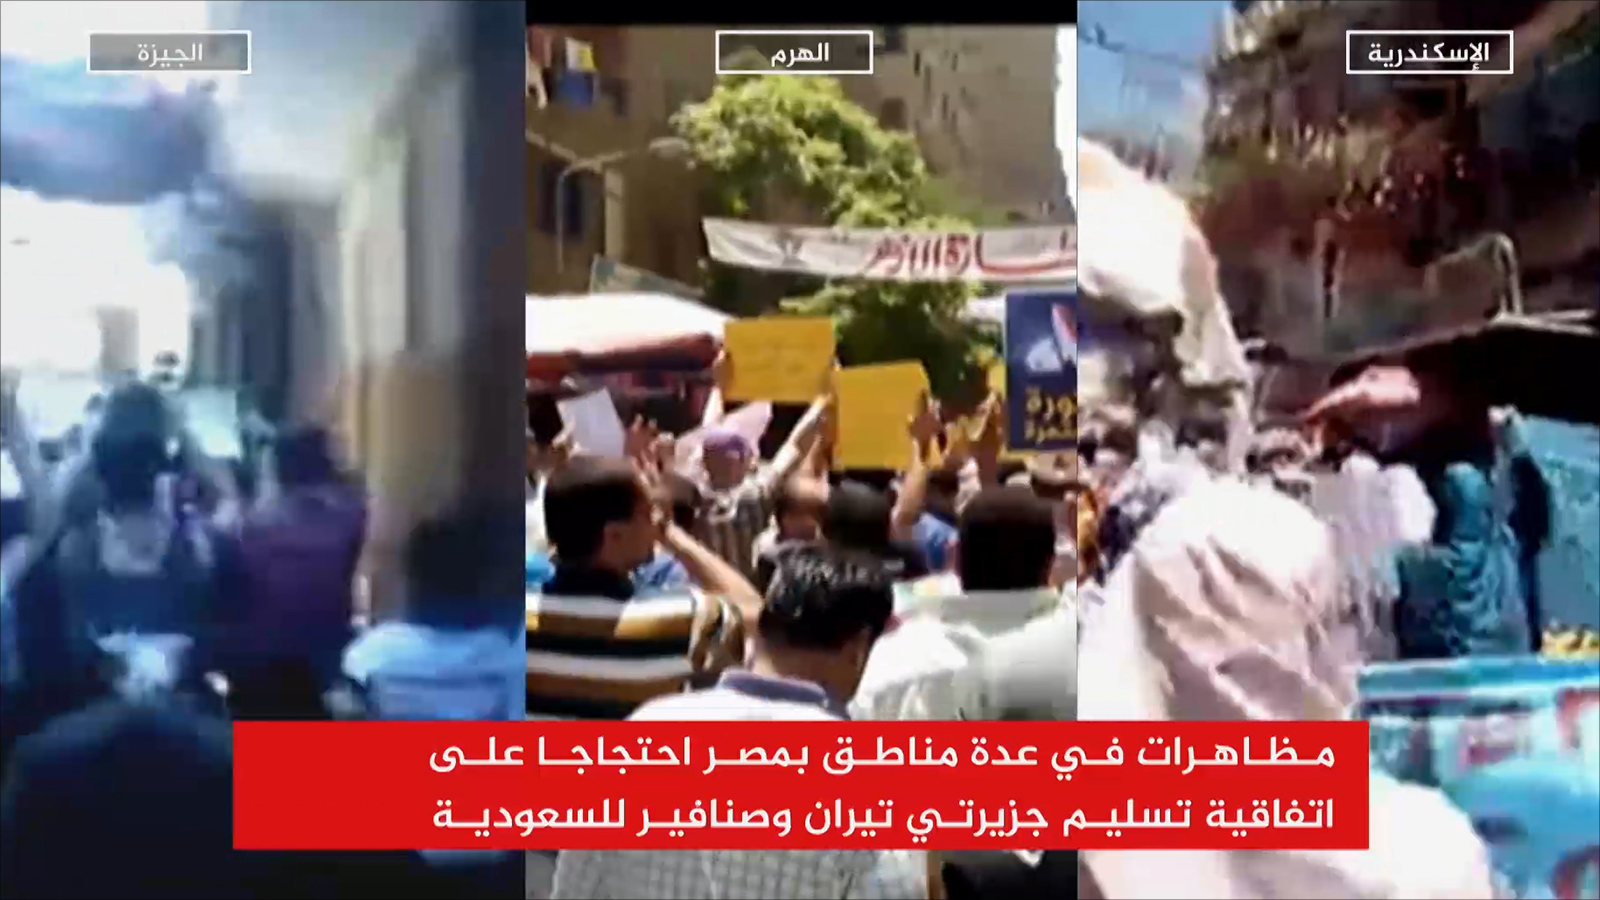 ‪المتظاهرون رددوا هتافات تطعن في مصرية الموافقين على الاتفاقية‬ (الجزيرة)